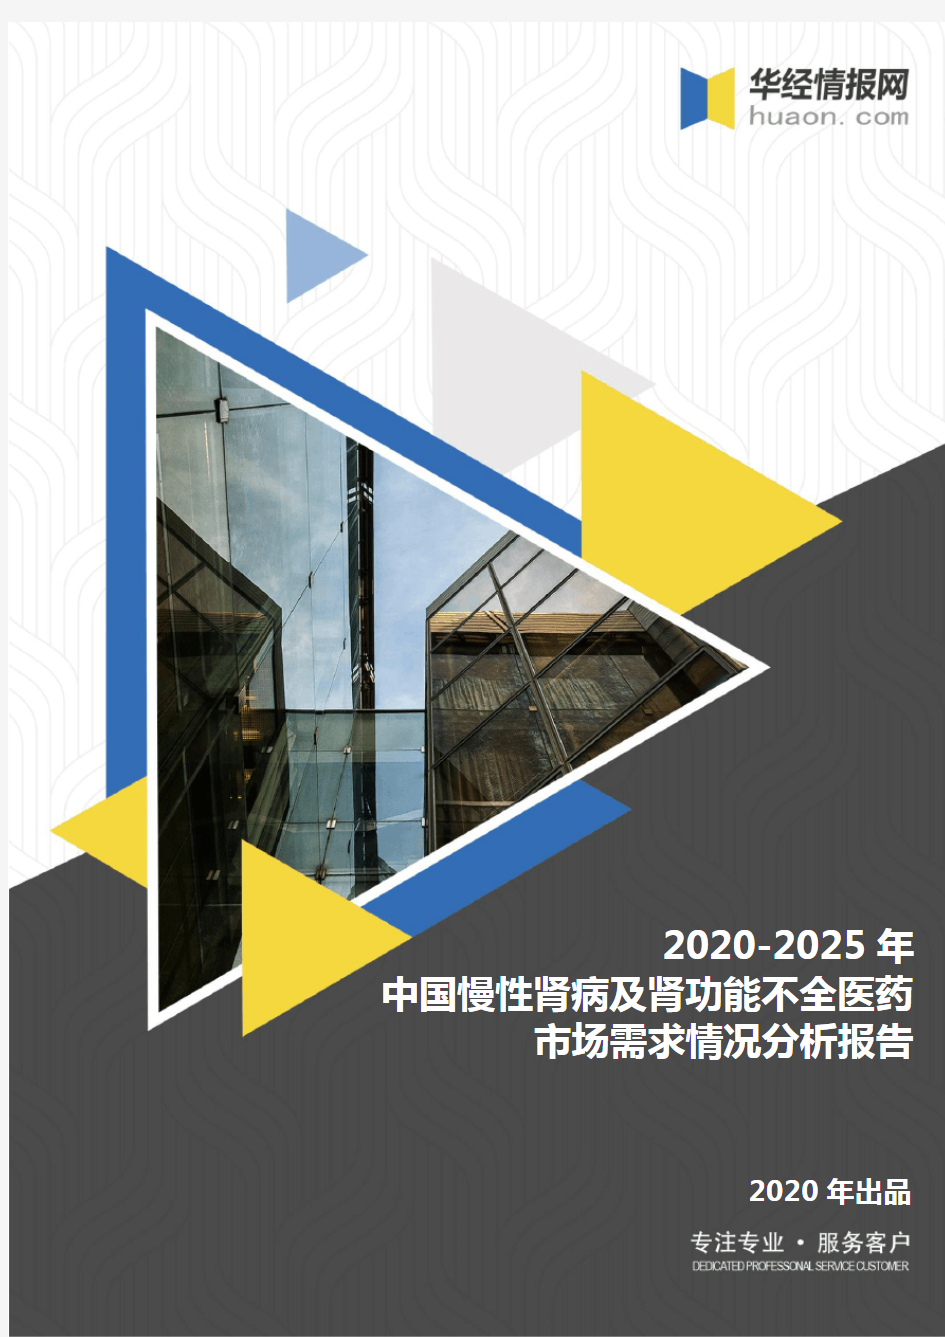 2020-2025年中国慢性肾病及肾功能不全医药市场需求情况分析报告